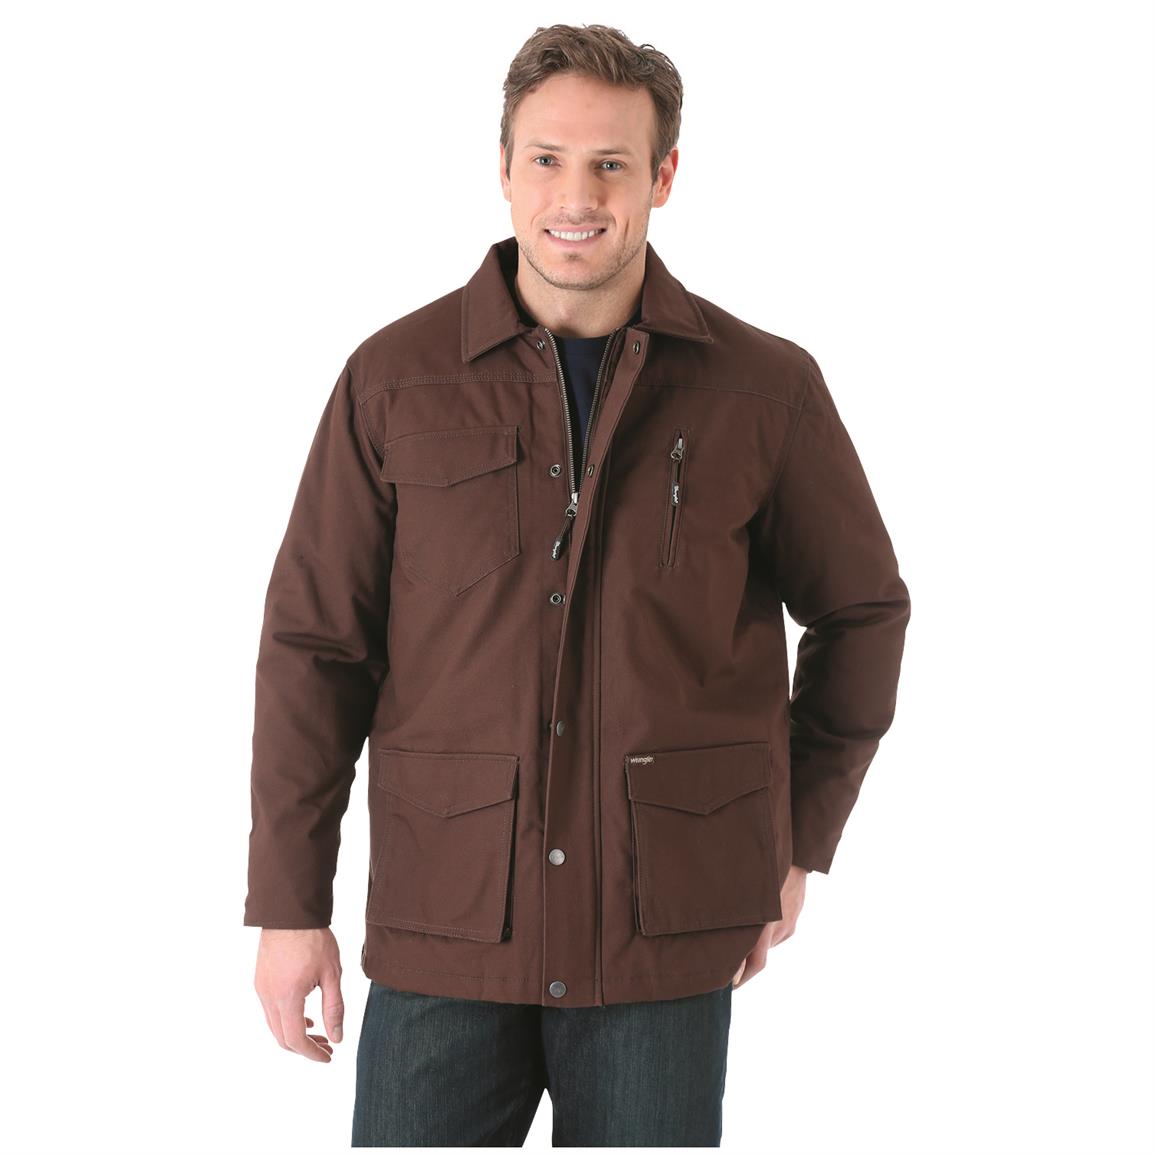 Wrangler Men's Barn Coat - 680289, Insulated Jackets & Coats at ...